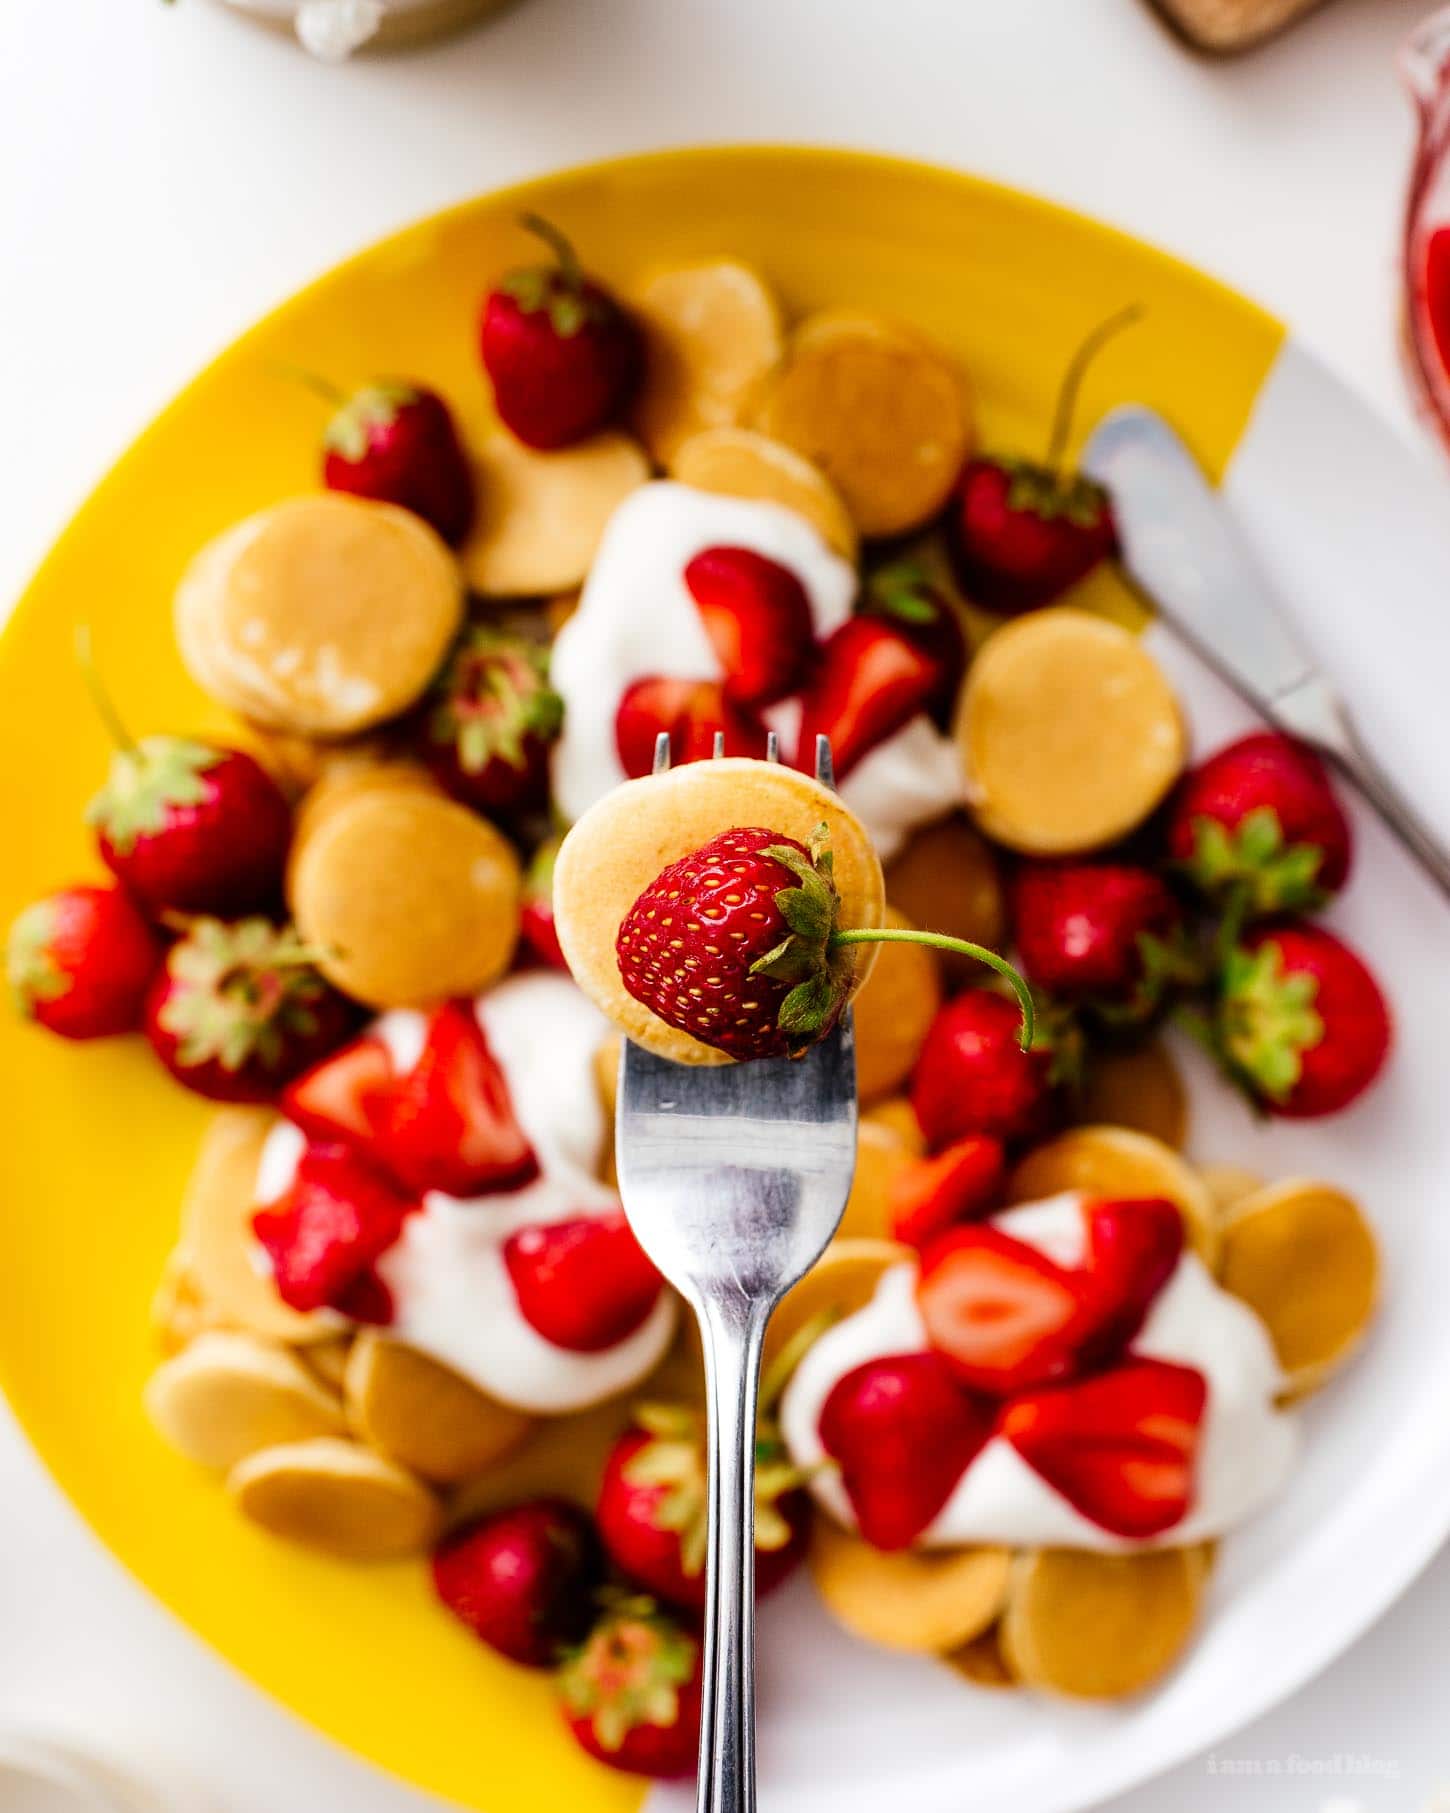 Esta receta de panqueques esponjosos con mini tartaletas de fresa es perfecta para el verano.  Mini panqueques de vainilla súper lindos cubiertos con jugosas fresas y crema ligeramente batida.  ¡Como un pastel de fresas para el desayuno!  #fresas #fresa #tortitasdefresa #tortitasdefresa #fresa